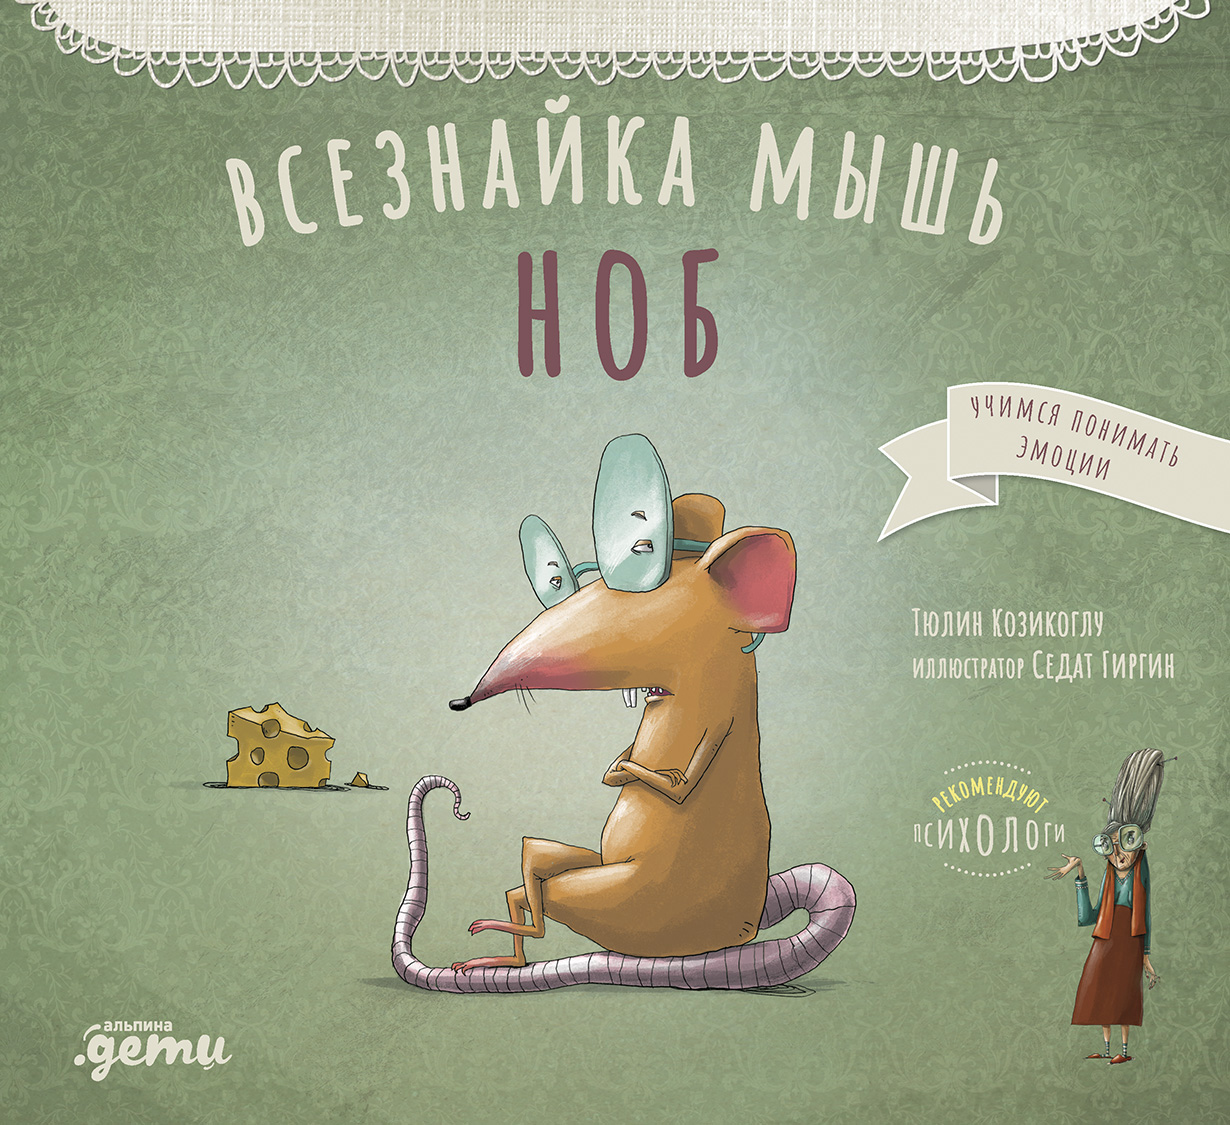 Всезнайка-мышь Ноб обложка.